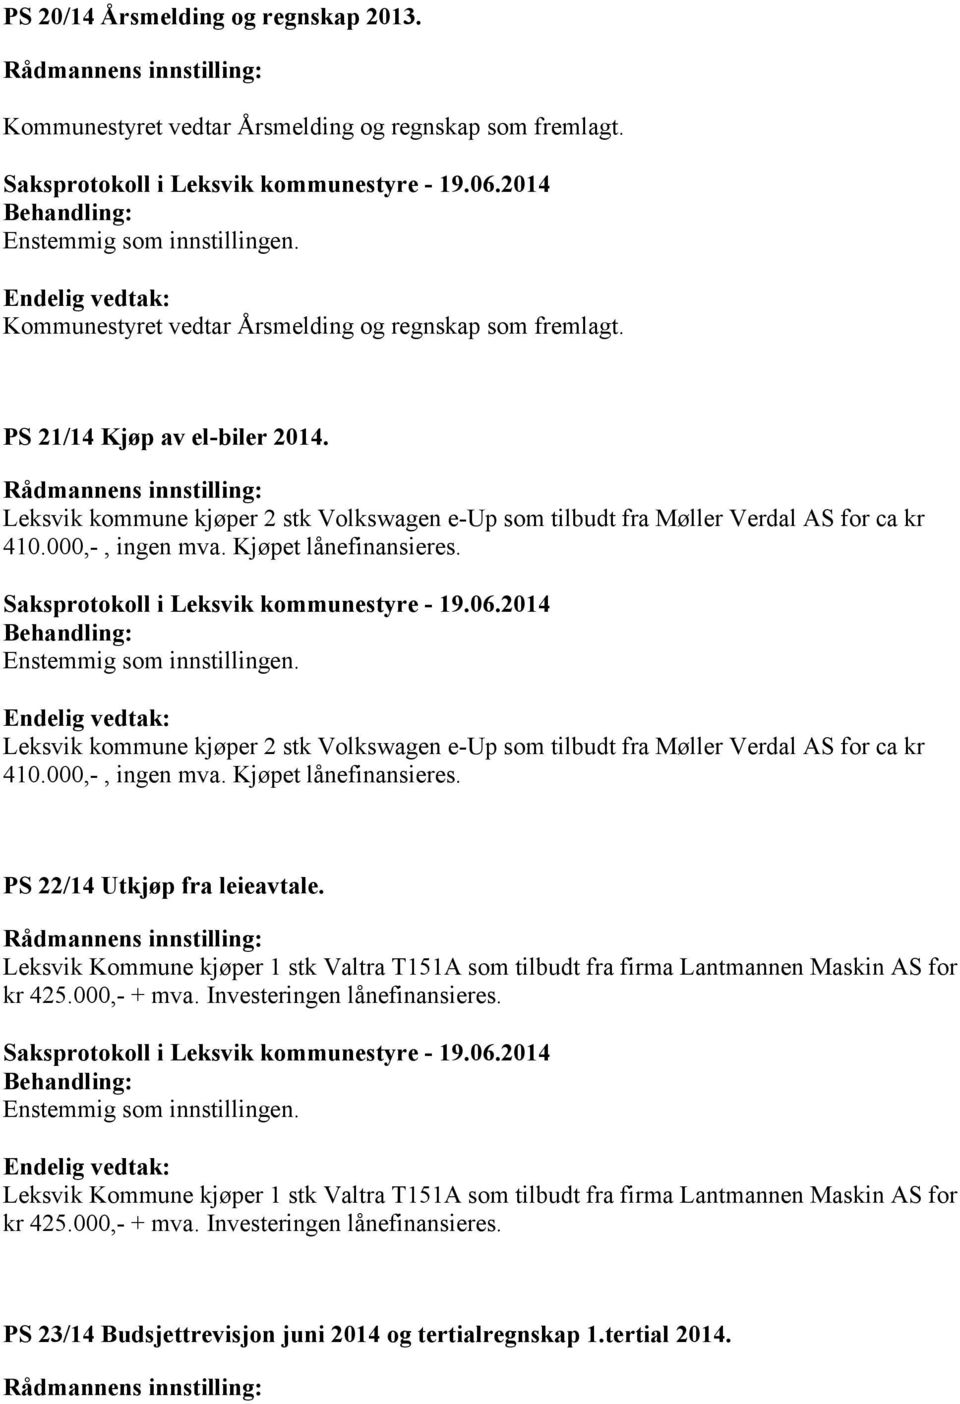 PS 22/14 Utkjøp fra leieavtale. Leksvik Kommune kjøper 1 stk Valtra T151A som tilbudt fra firma Lantmannen Maskin AS for kr 425.000,- + mva. Investeringen lånefinansieres.